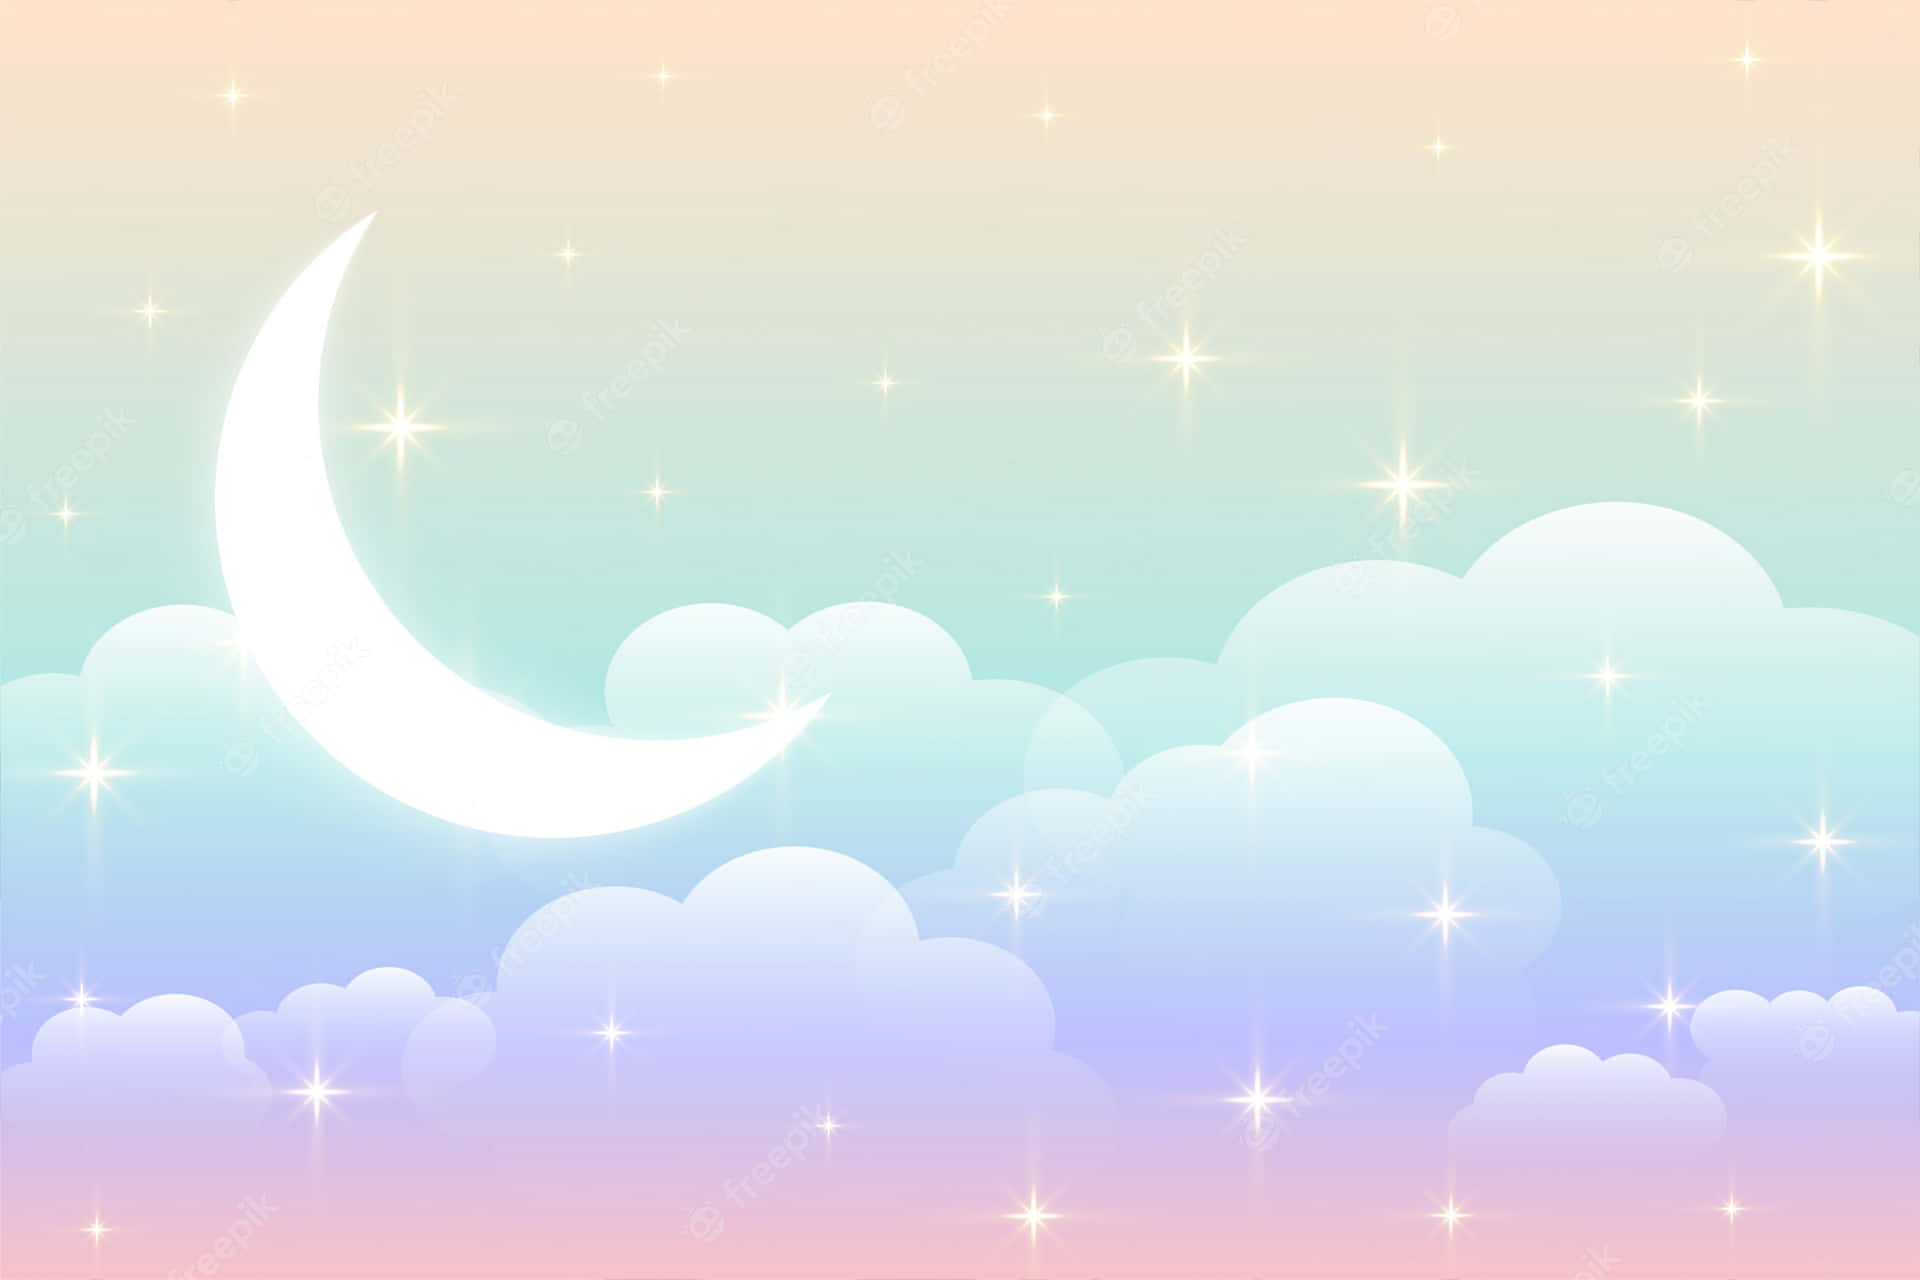 Unaluna Caprichosa Cuelga Pacíficamente En El Cielo Nocturno, Su Suave Brillo Pastel Agregando Una Hermosa Pincelada De Color A La Oscuridad. Fondo de pantalla